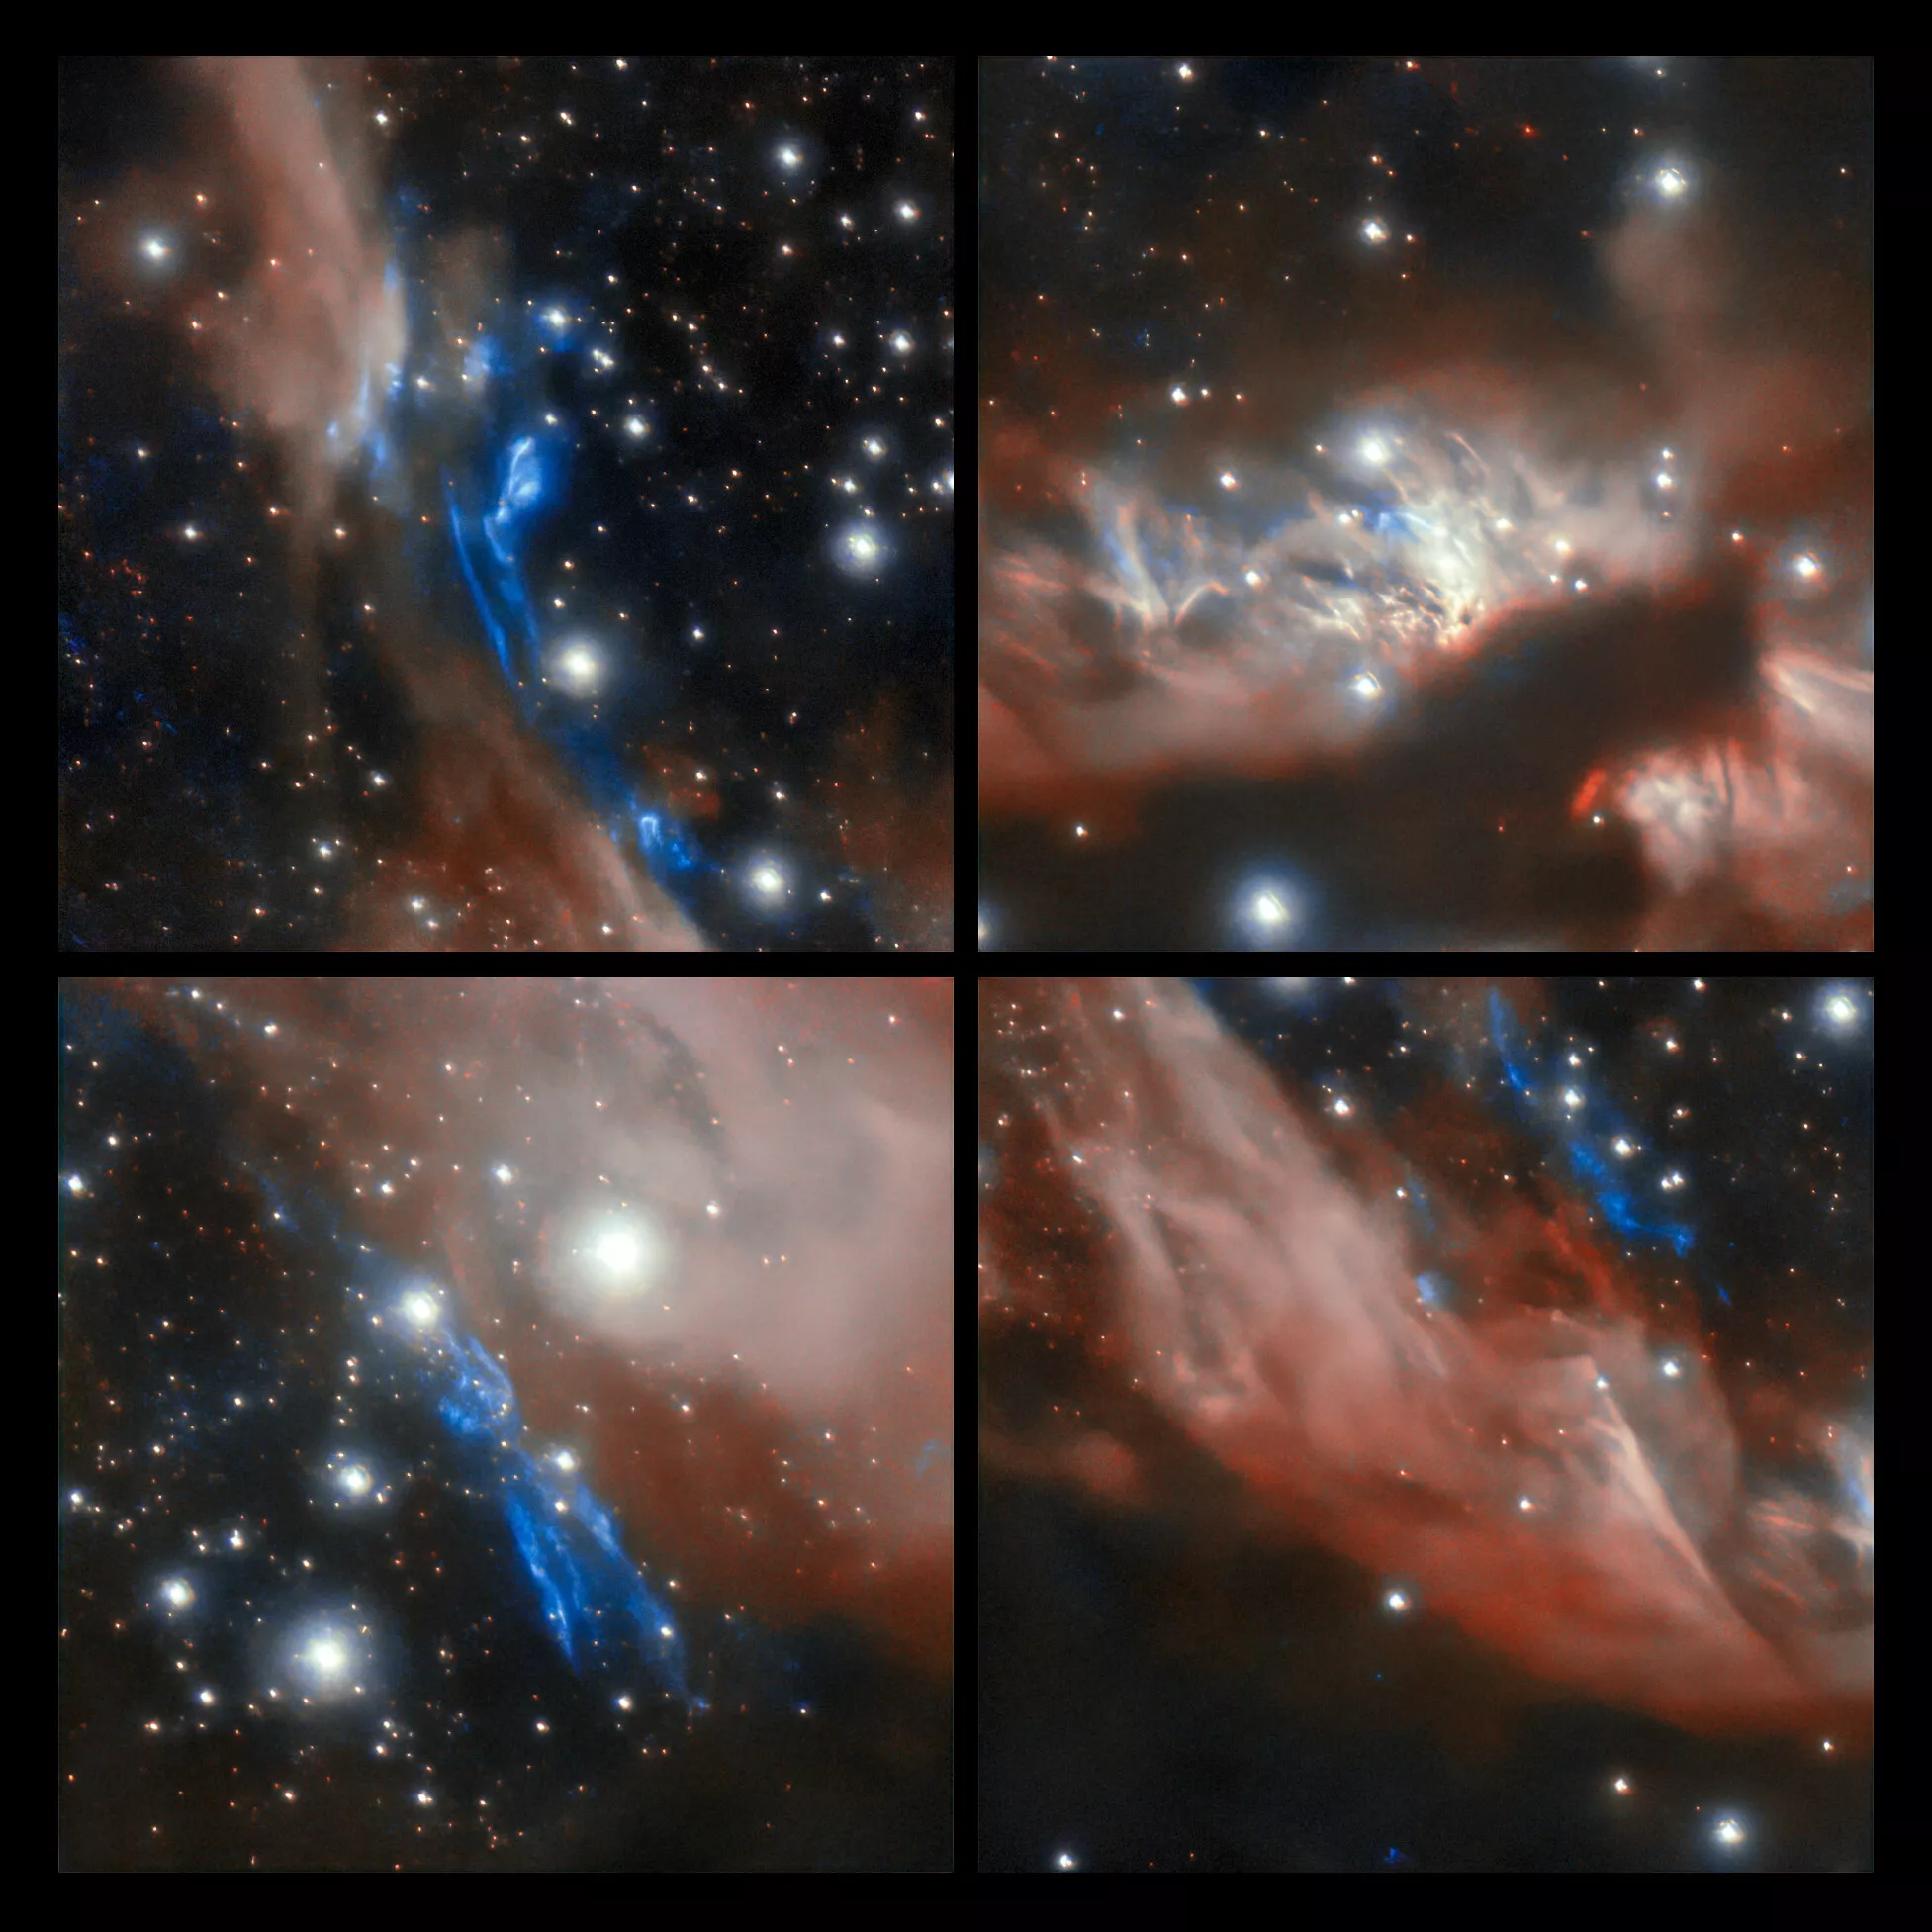 Astrónomos cordobeses capturan imágenes de jets estelares • Canal C